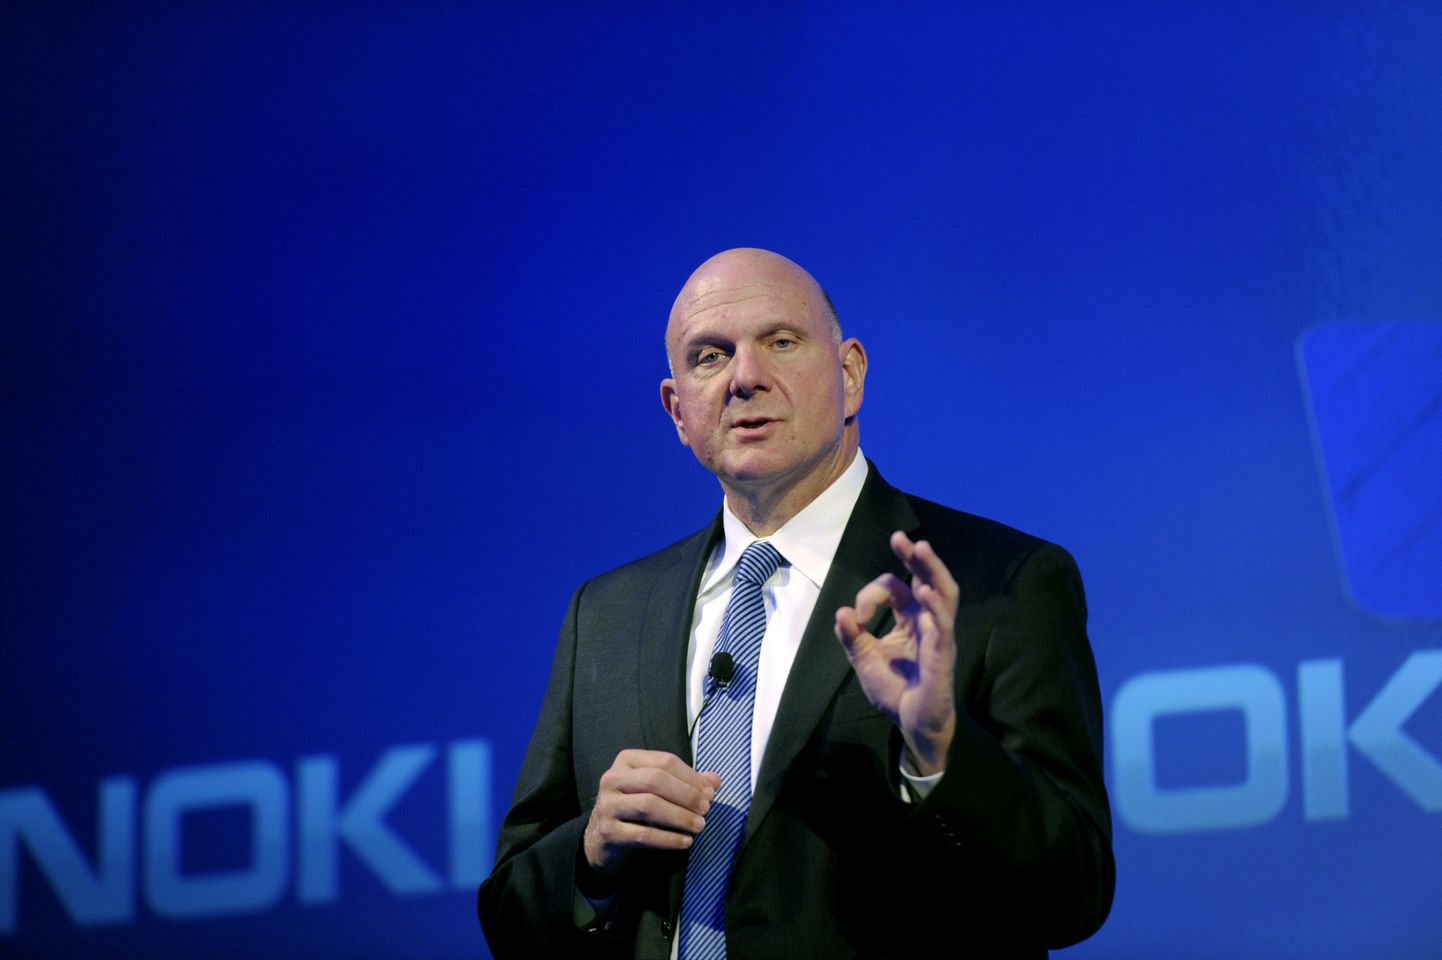 Micosofti juht Steve Ballmer lubas soomlastele andmekeskust Nokia mobiiliüksuse ostmise teate järgsel pressikonverentsil.